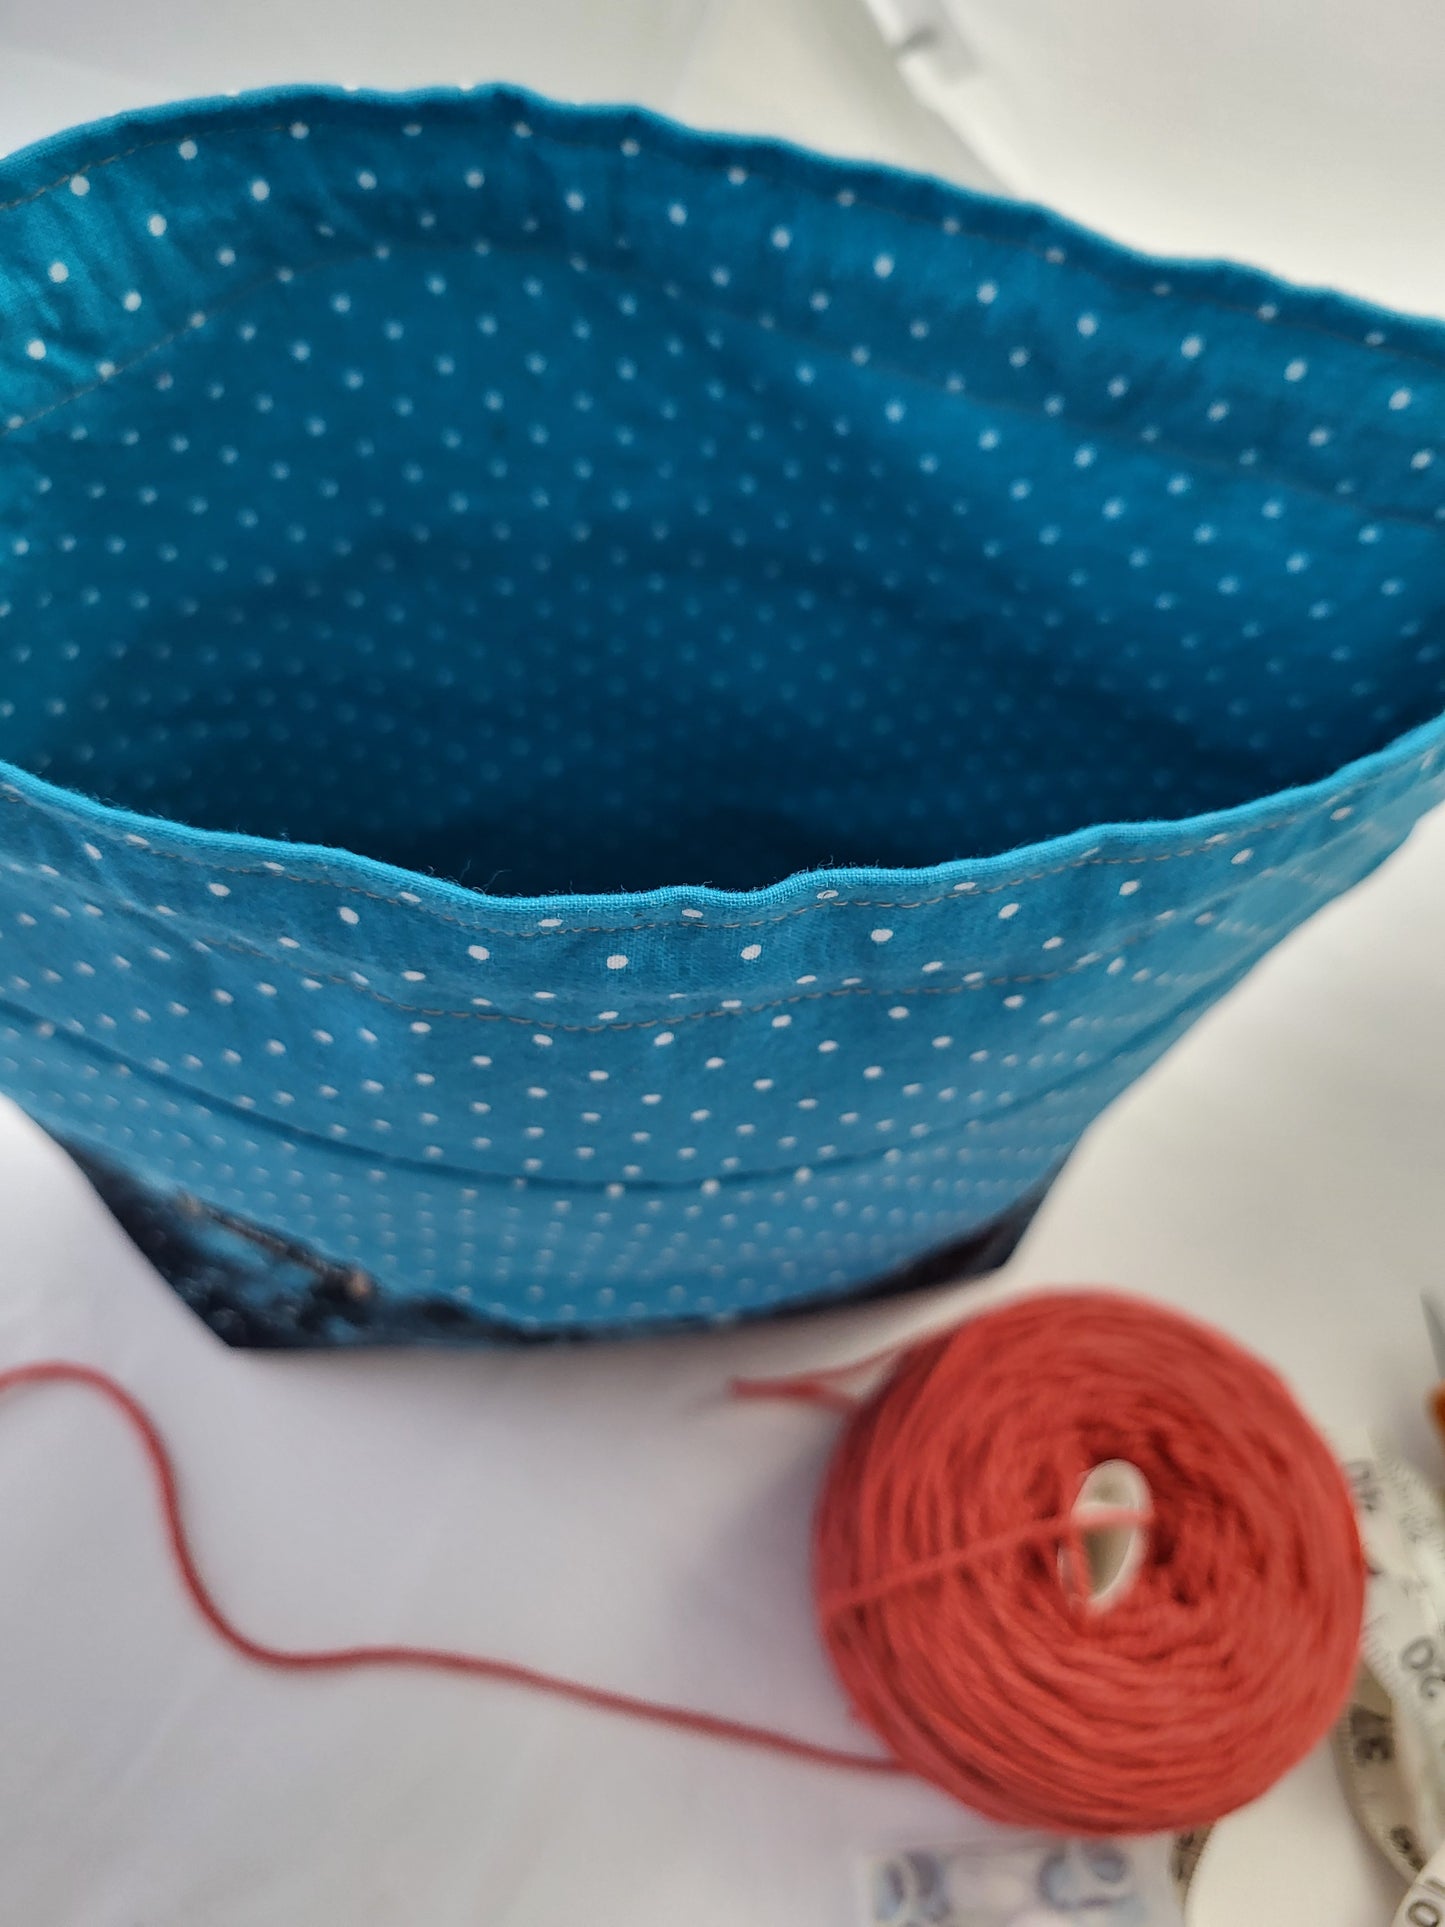 Starry polka dots drawstring Sock Sack, Drawstring bag, small project bag, small storage bag